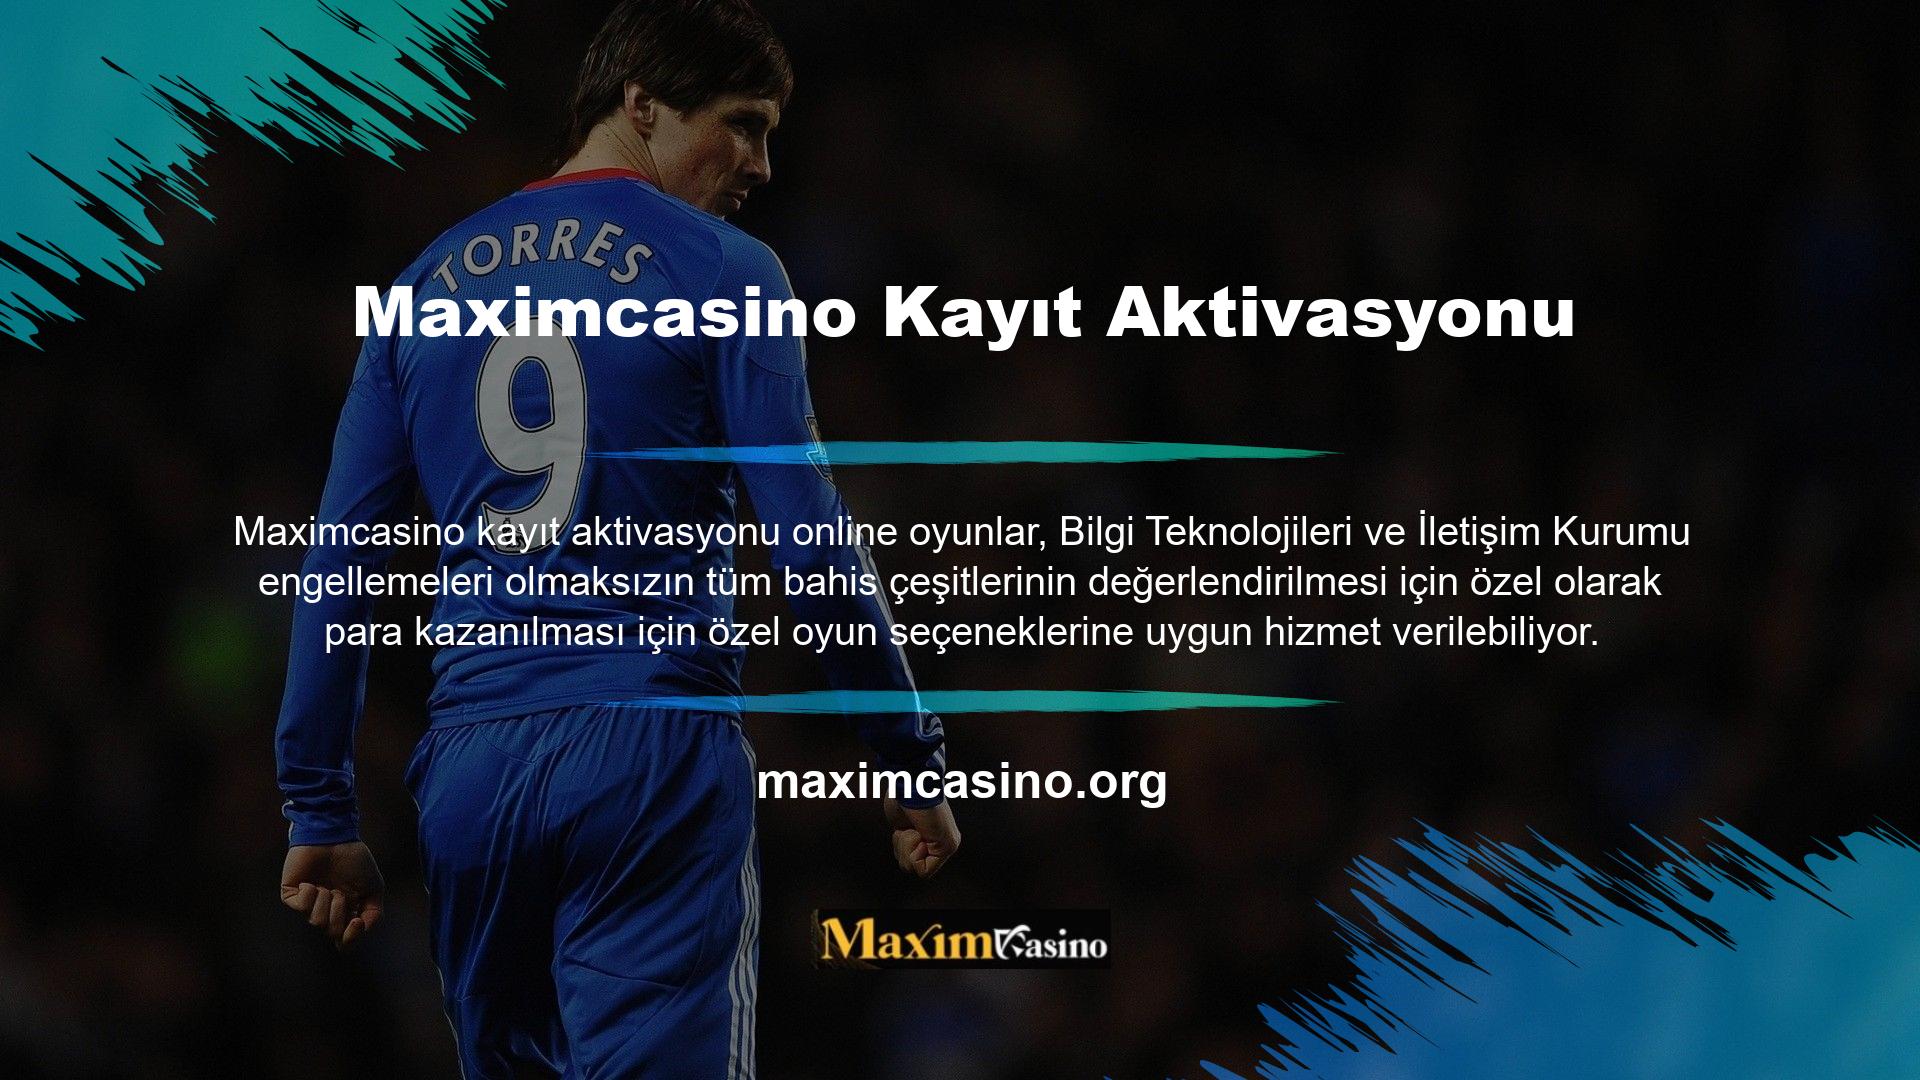 Maximcasino canlı bahis oyunları, futbol, ​​Formula 1 ve dart gibi spor bahislerinin Türkiye'de yasa dışı olduğu ve sürekli değiştiği adreslerde bulunan sitelere özel bahis oynamanıza olanak tanır